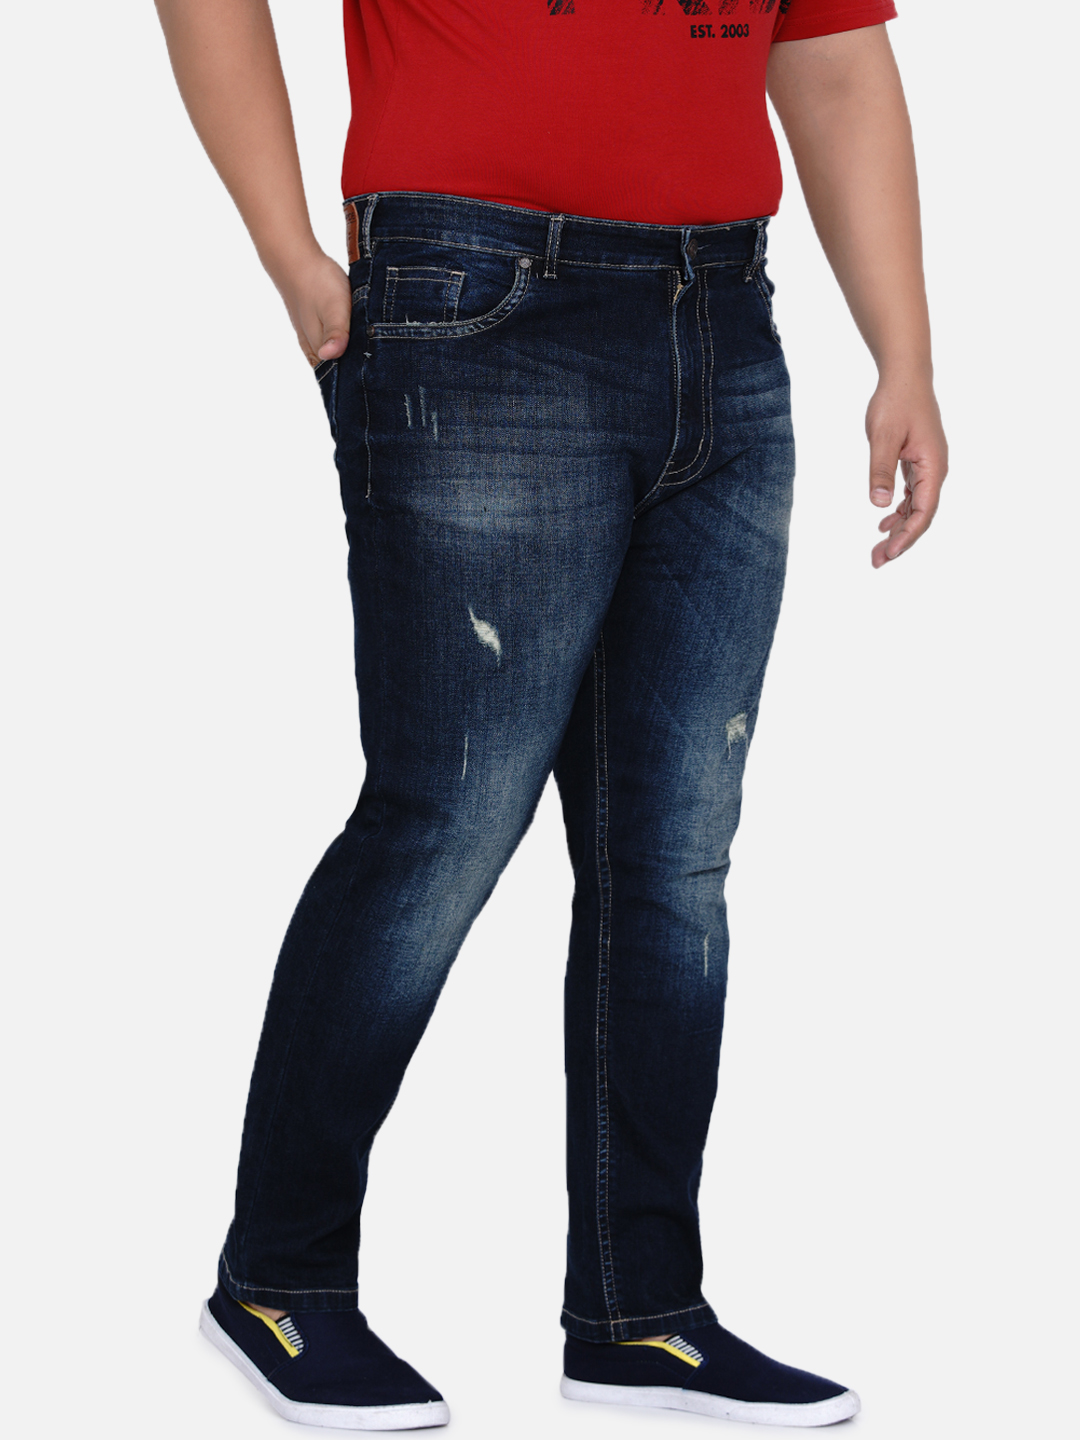 affordables/jeans/JPJ12184/jpj12184-1.jpg